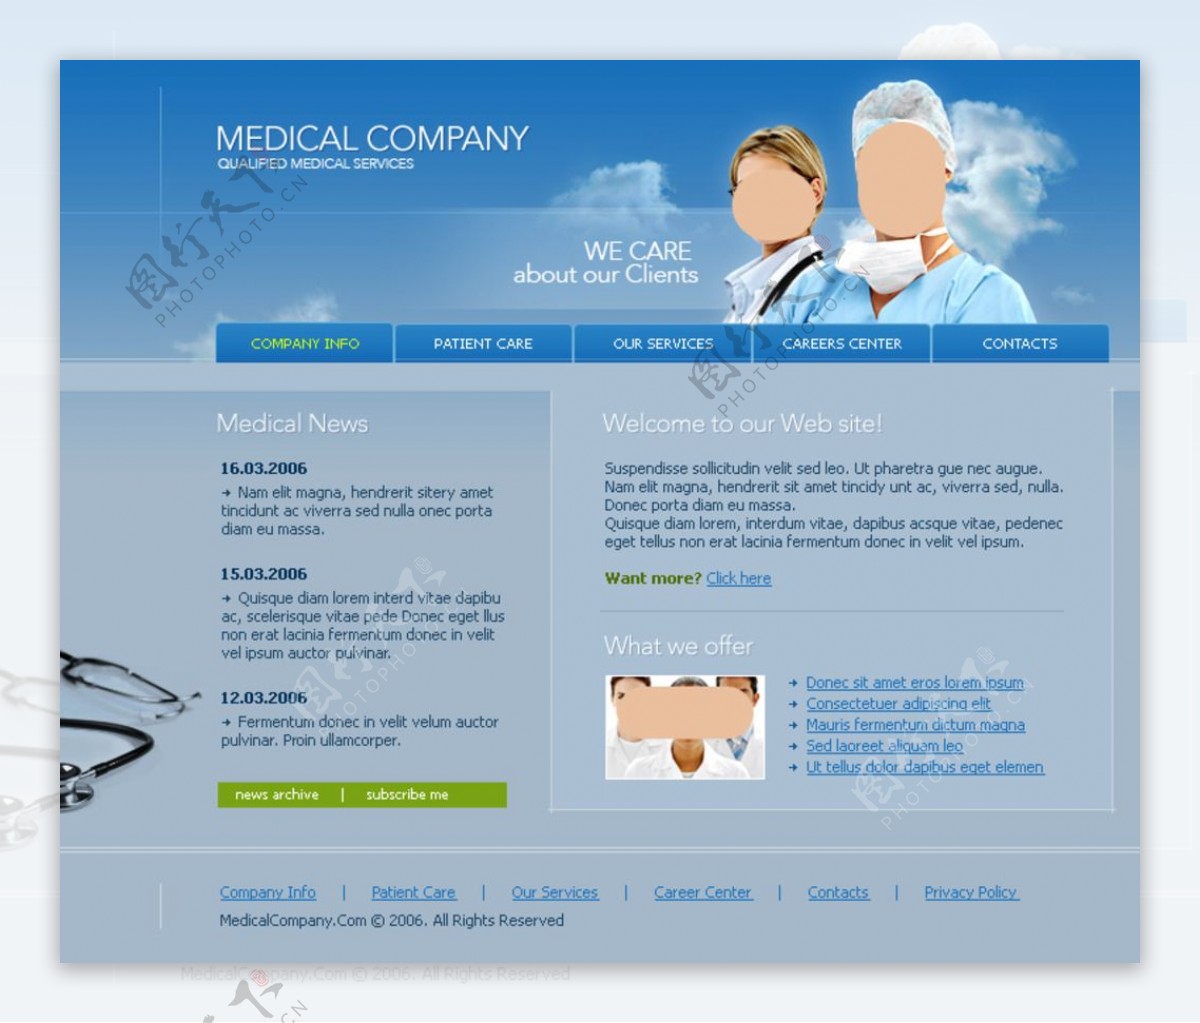 国外医疗卫生行业网站图片